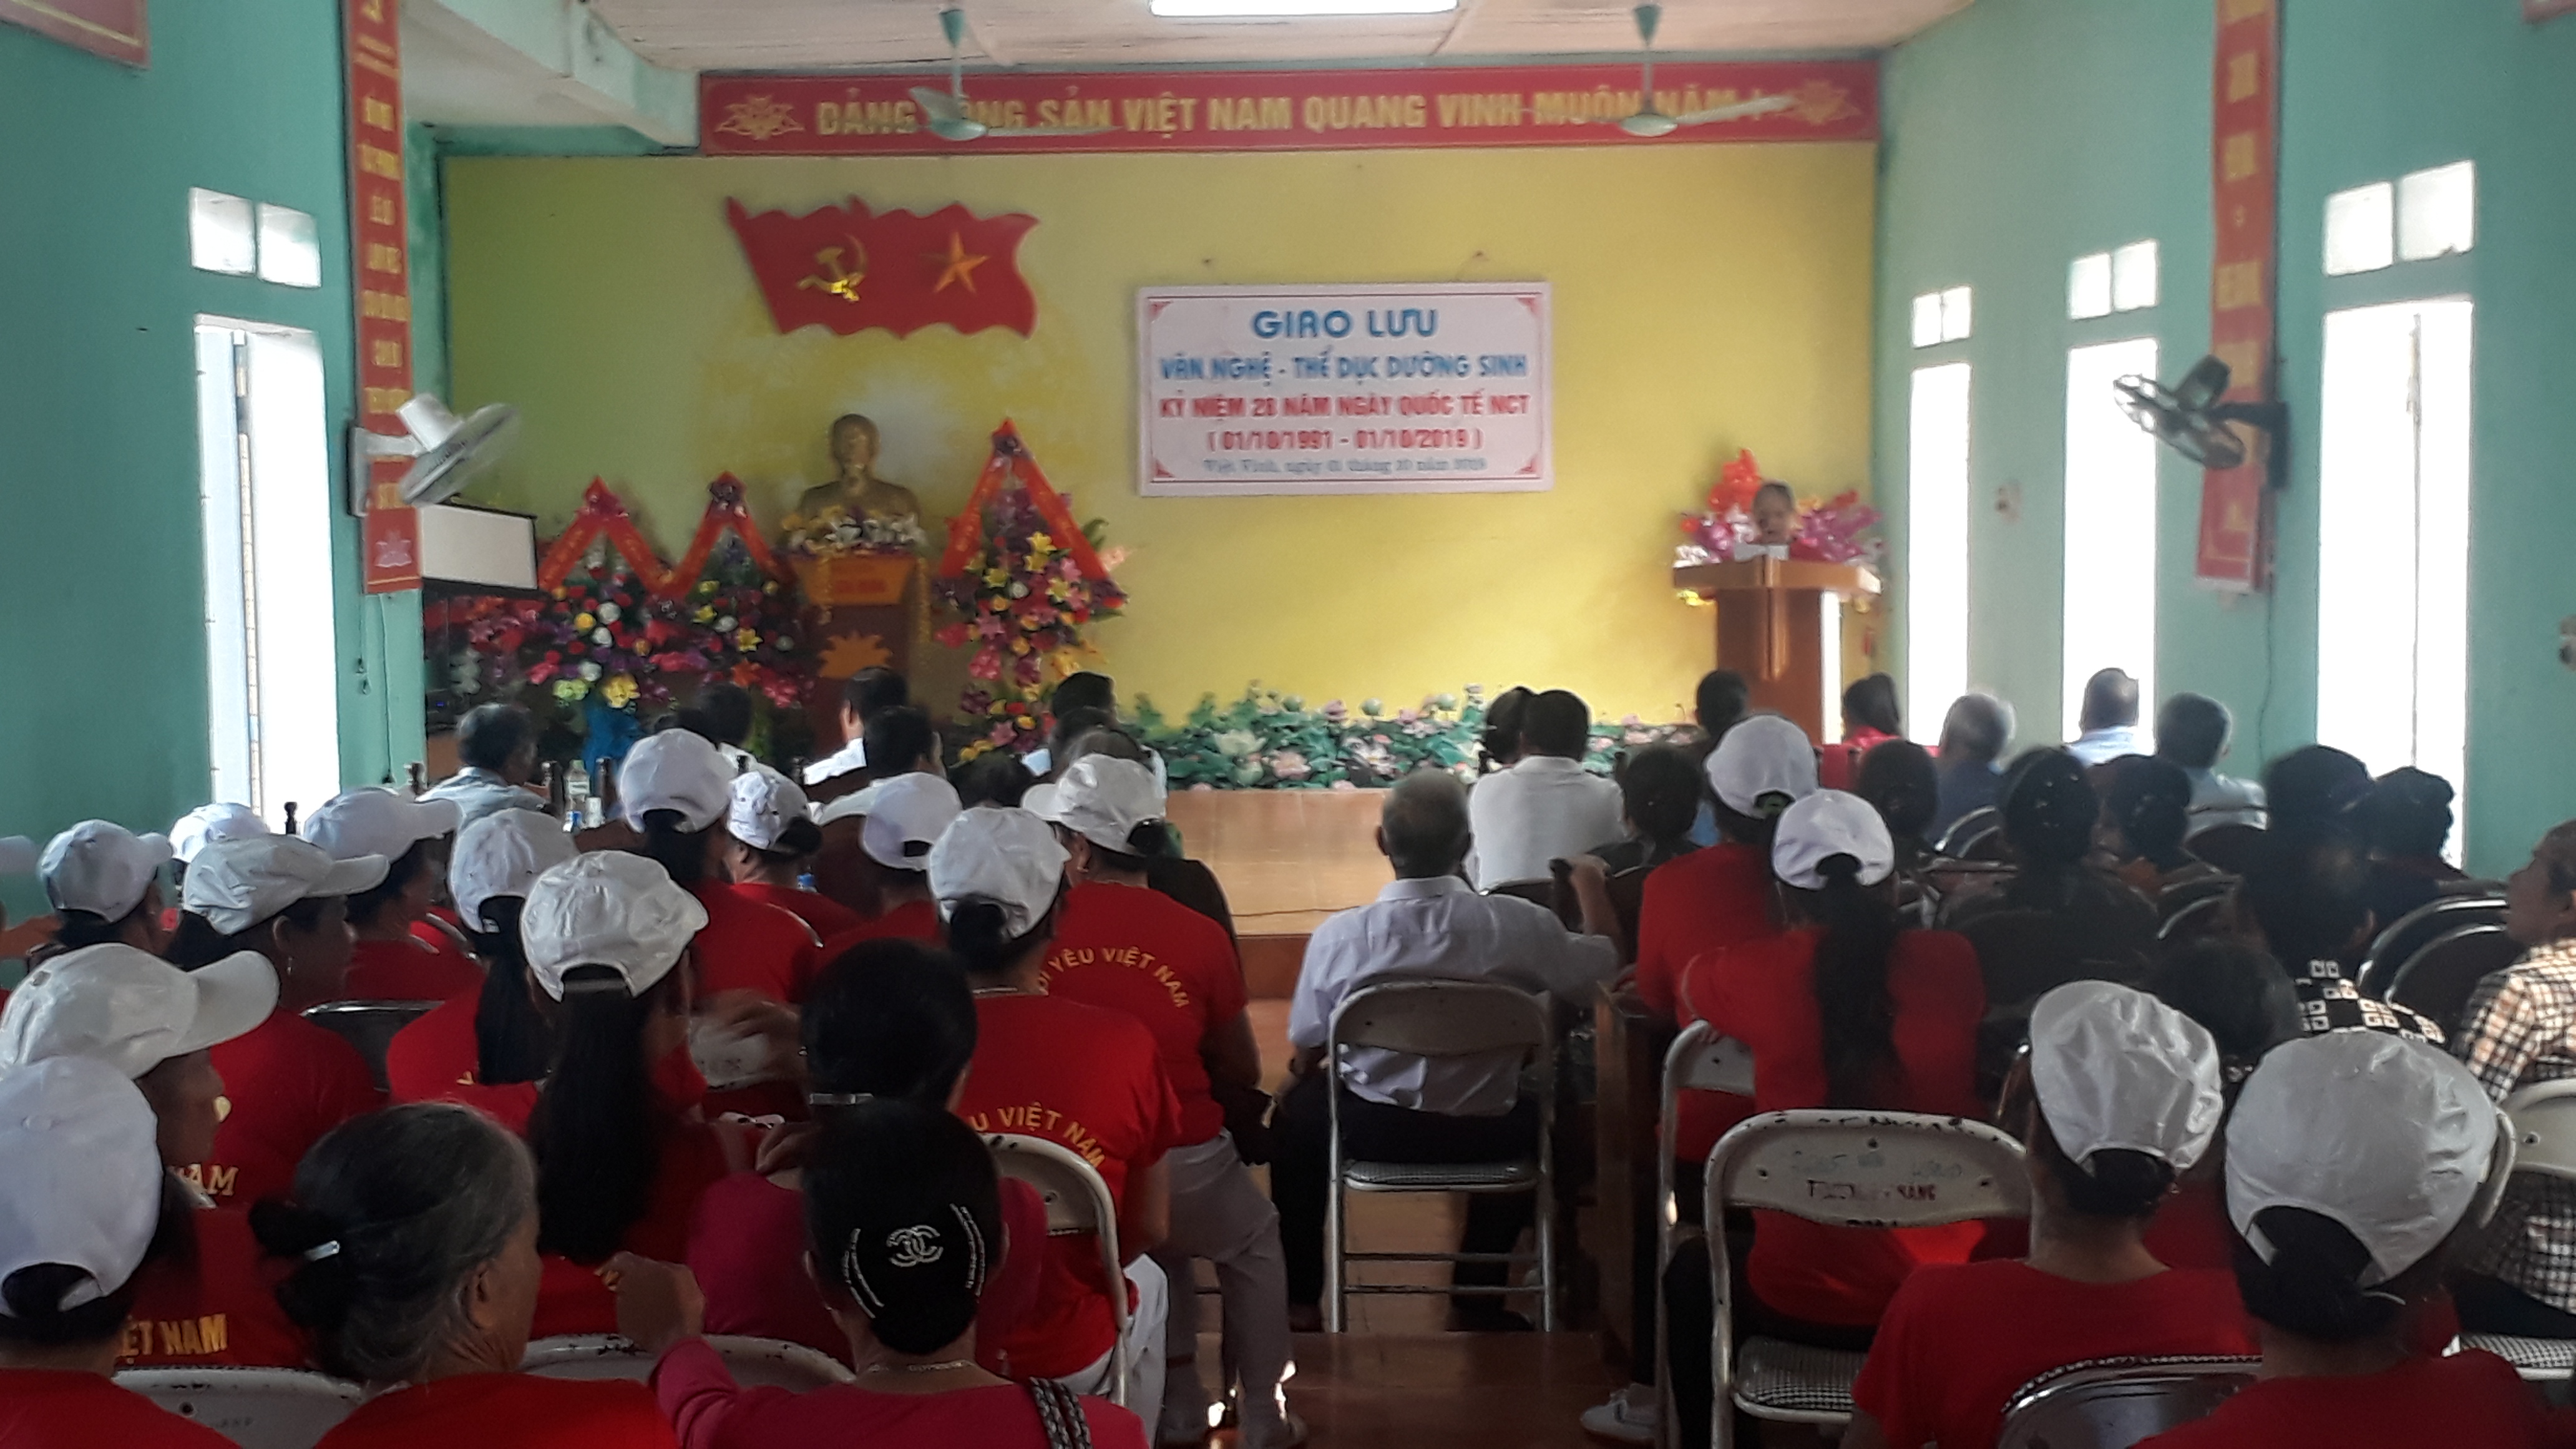 Hội người cao tuổi xã Việt Vinh tổ chức buổi giao lưu thể dục dưỡng sinh và giao lưu văn nghệ.